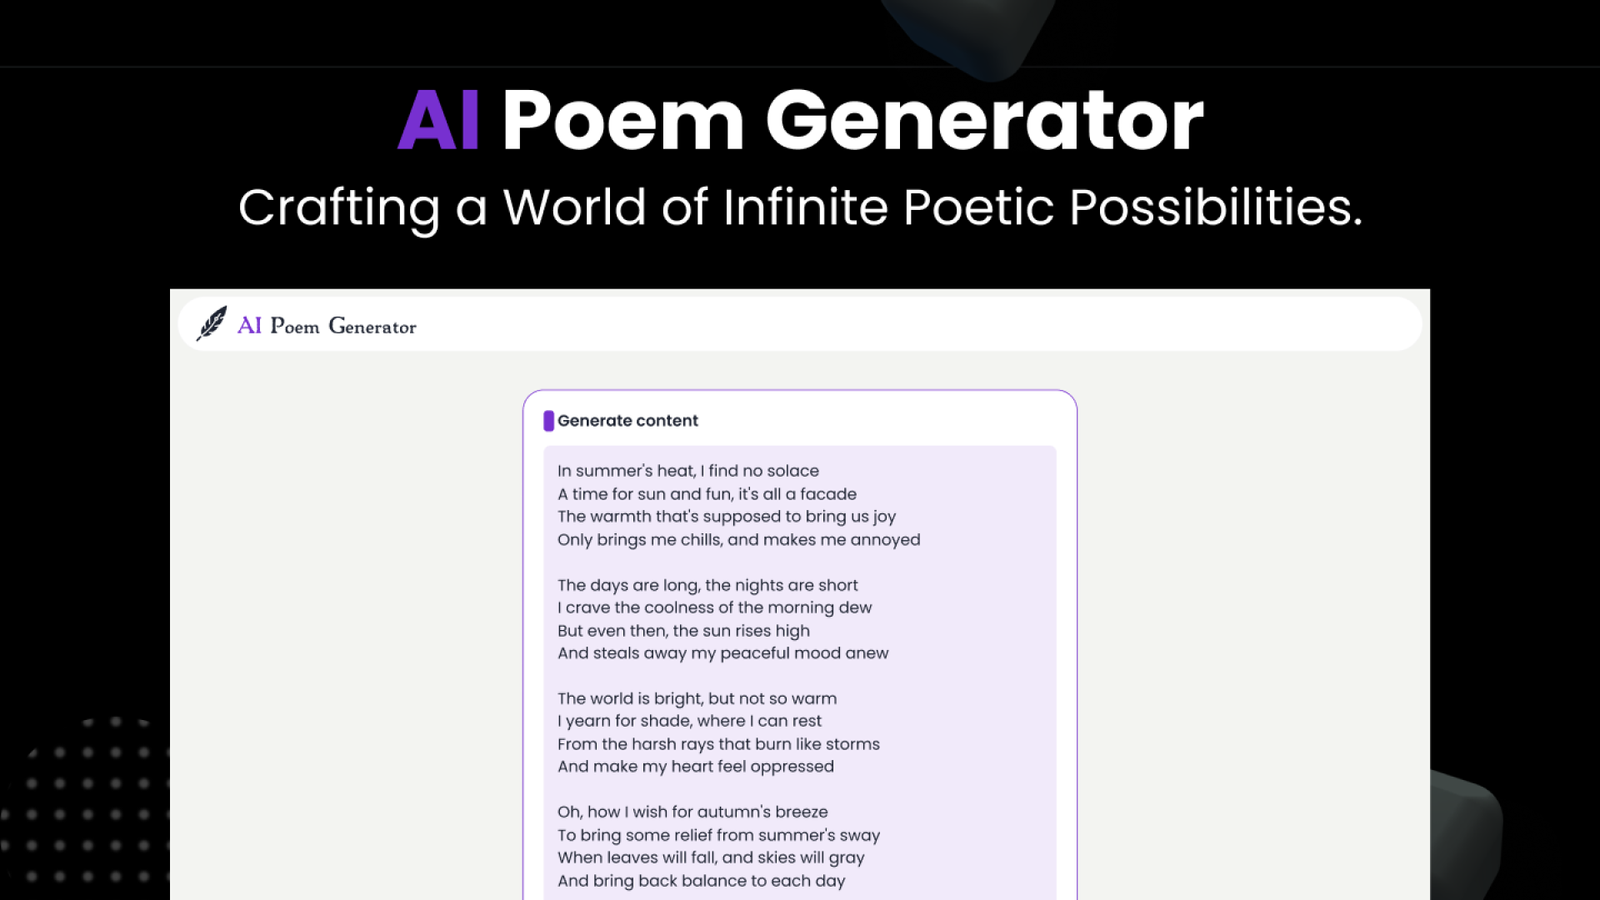 AI Poem Generator